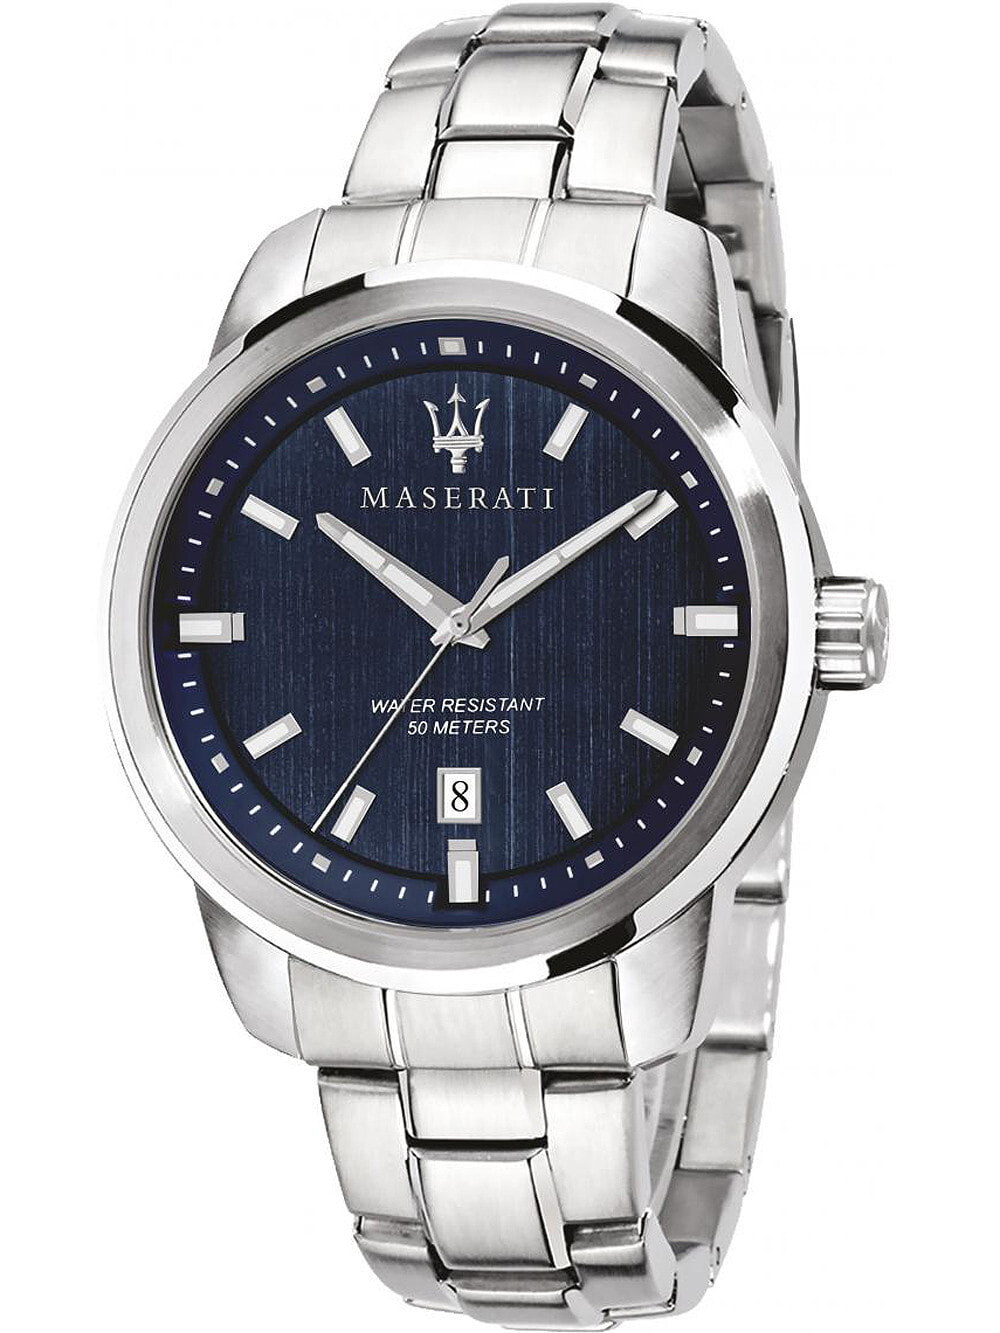 Мужские наручные часы с серебряным браслетом Maserati R8853121004 Successo mens 44mm 5ATM